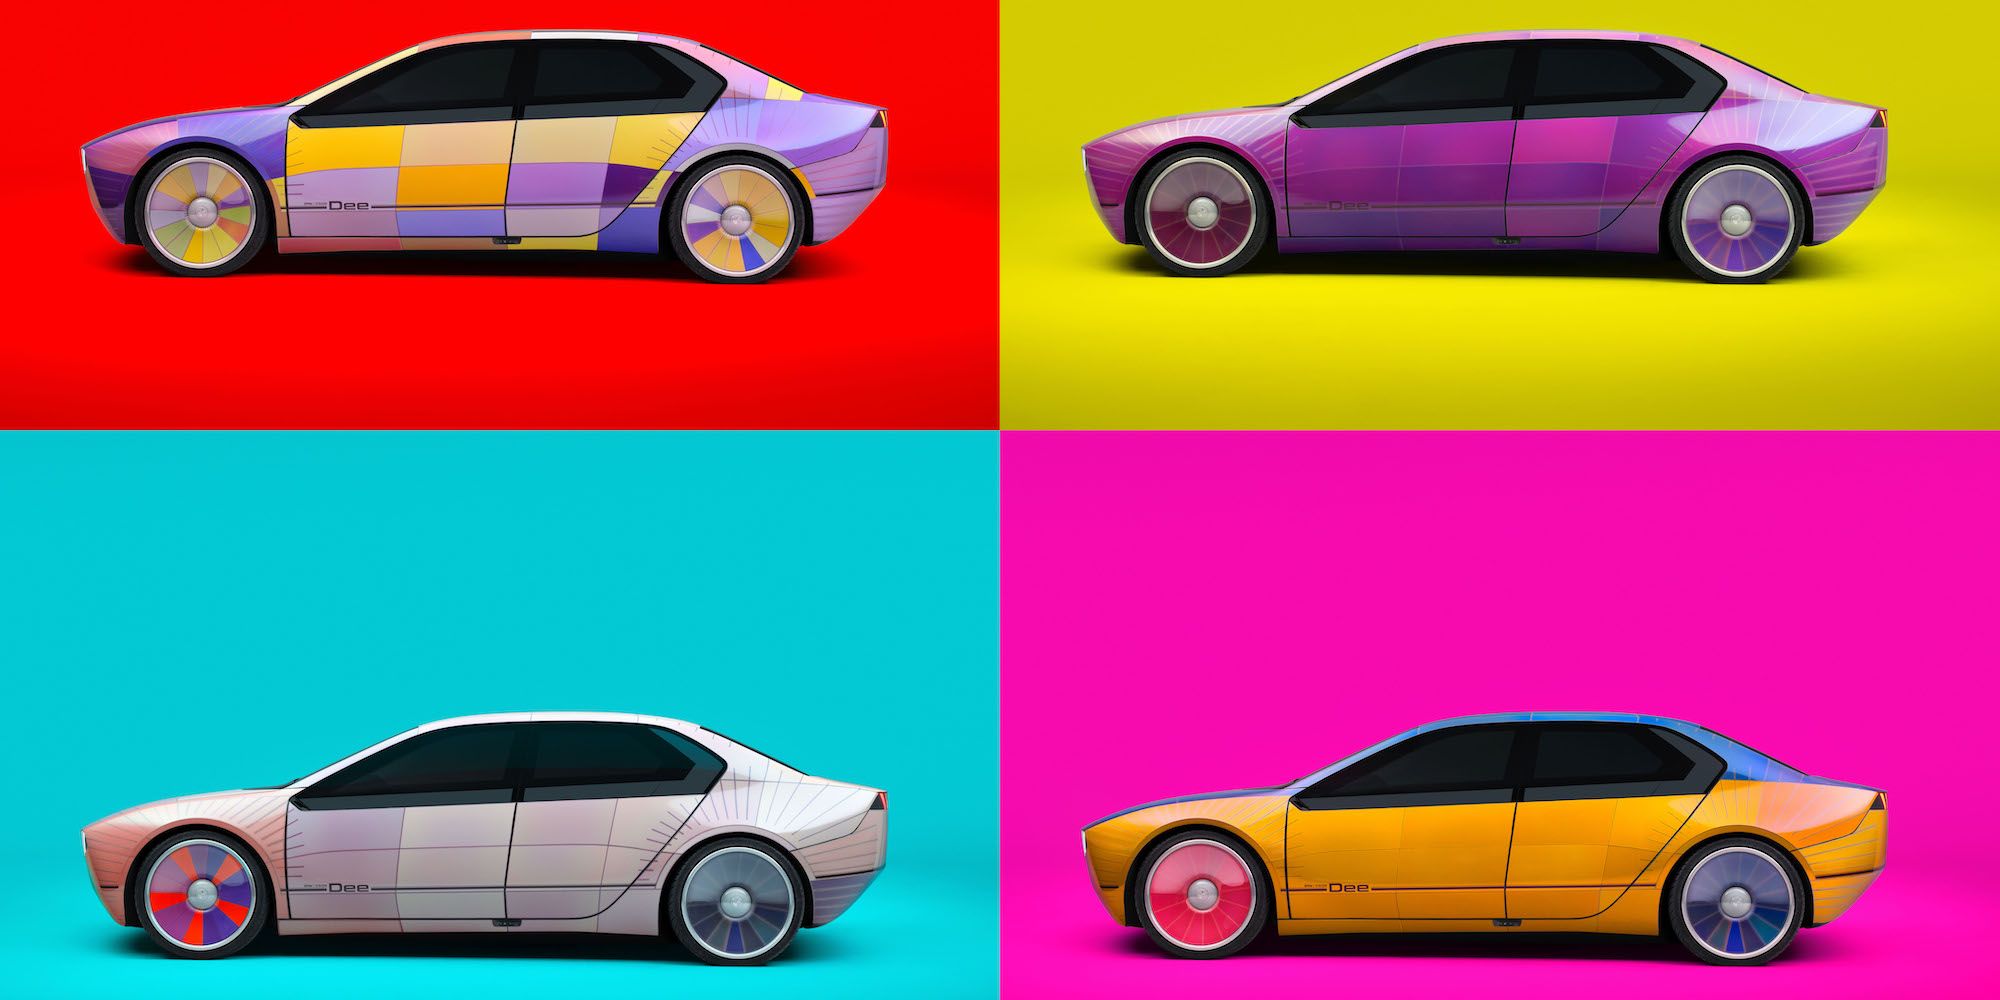 El i Vision Dee de BMW es un sedán eléctrico inspirado en el metaverso que cambia de color